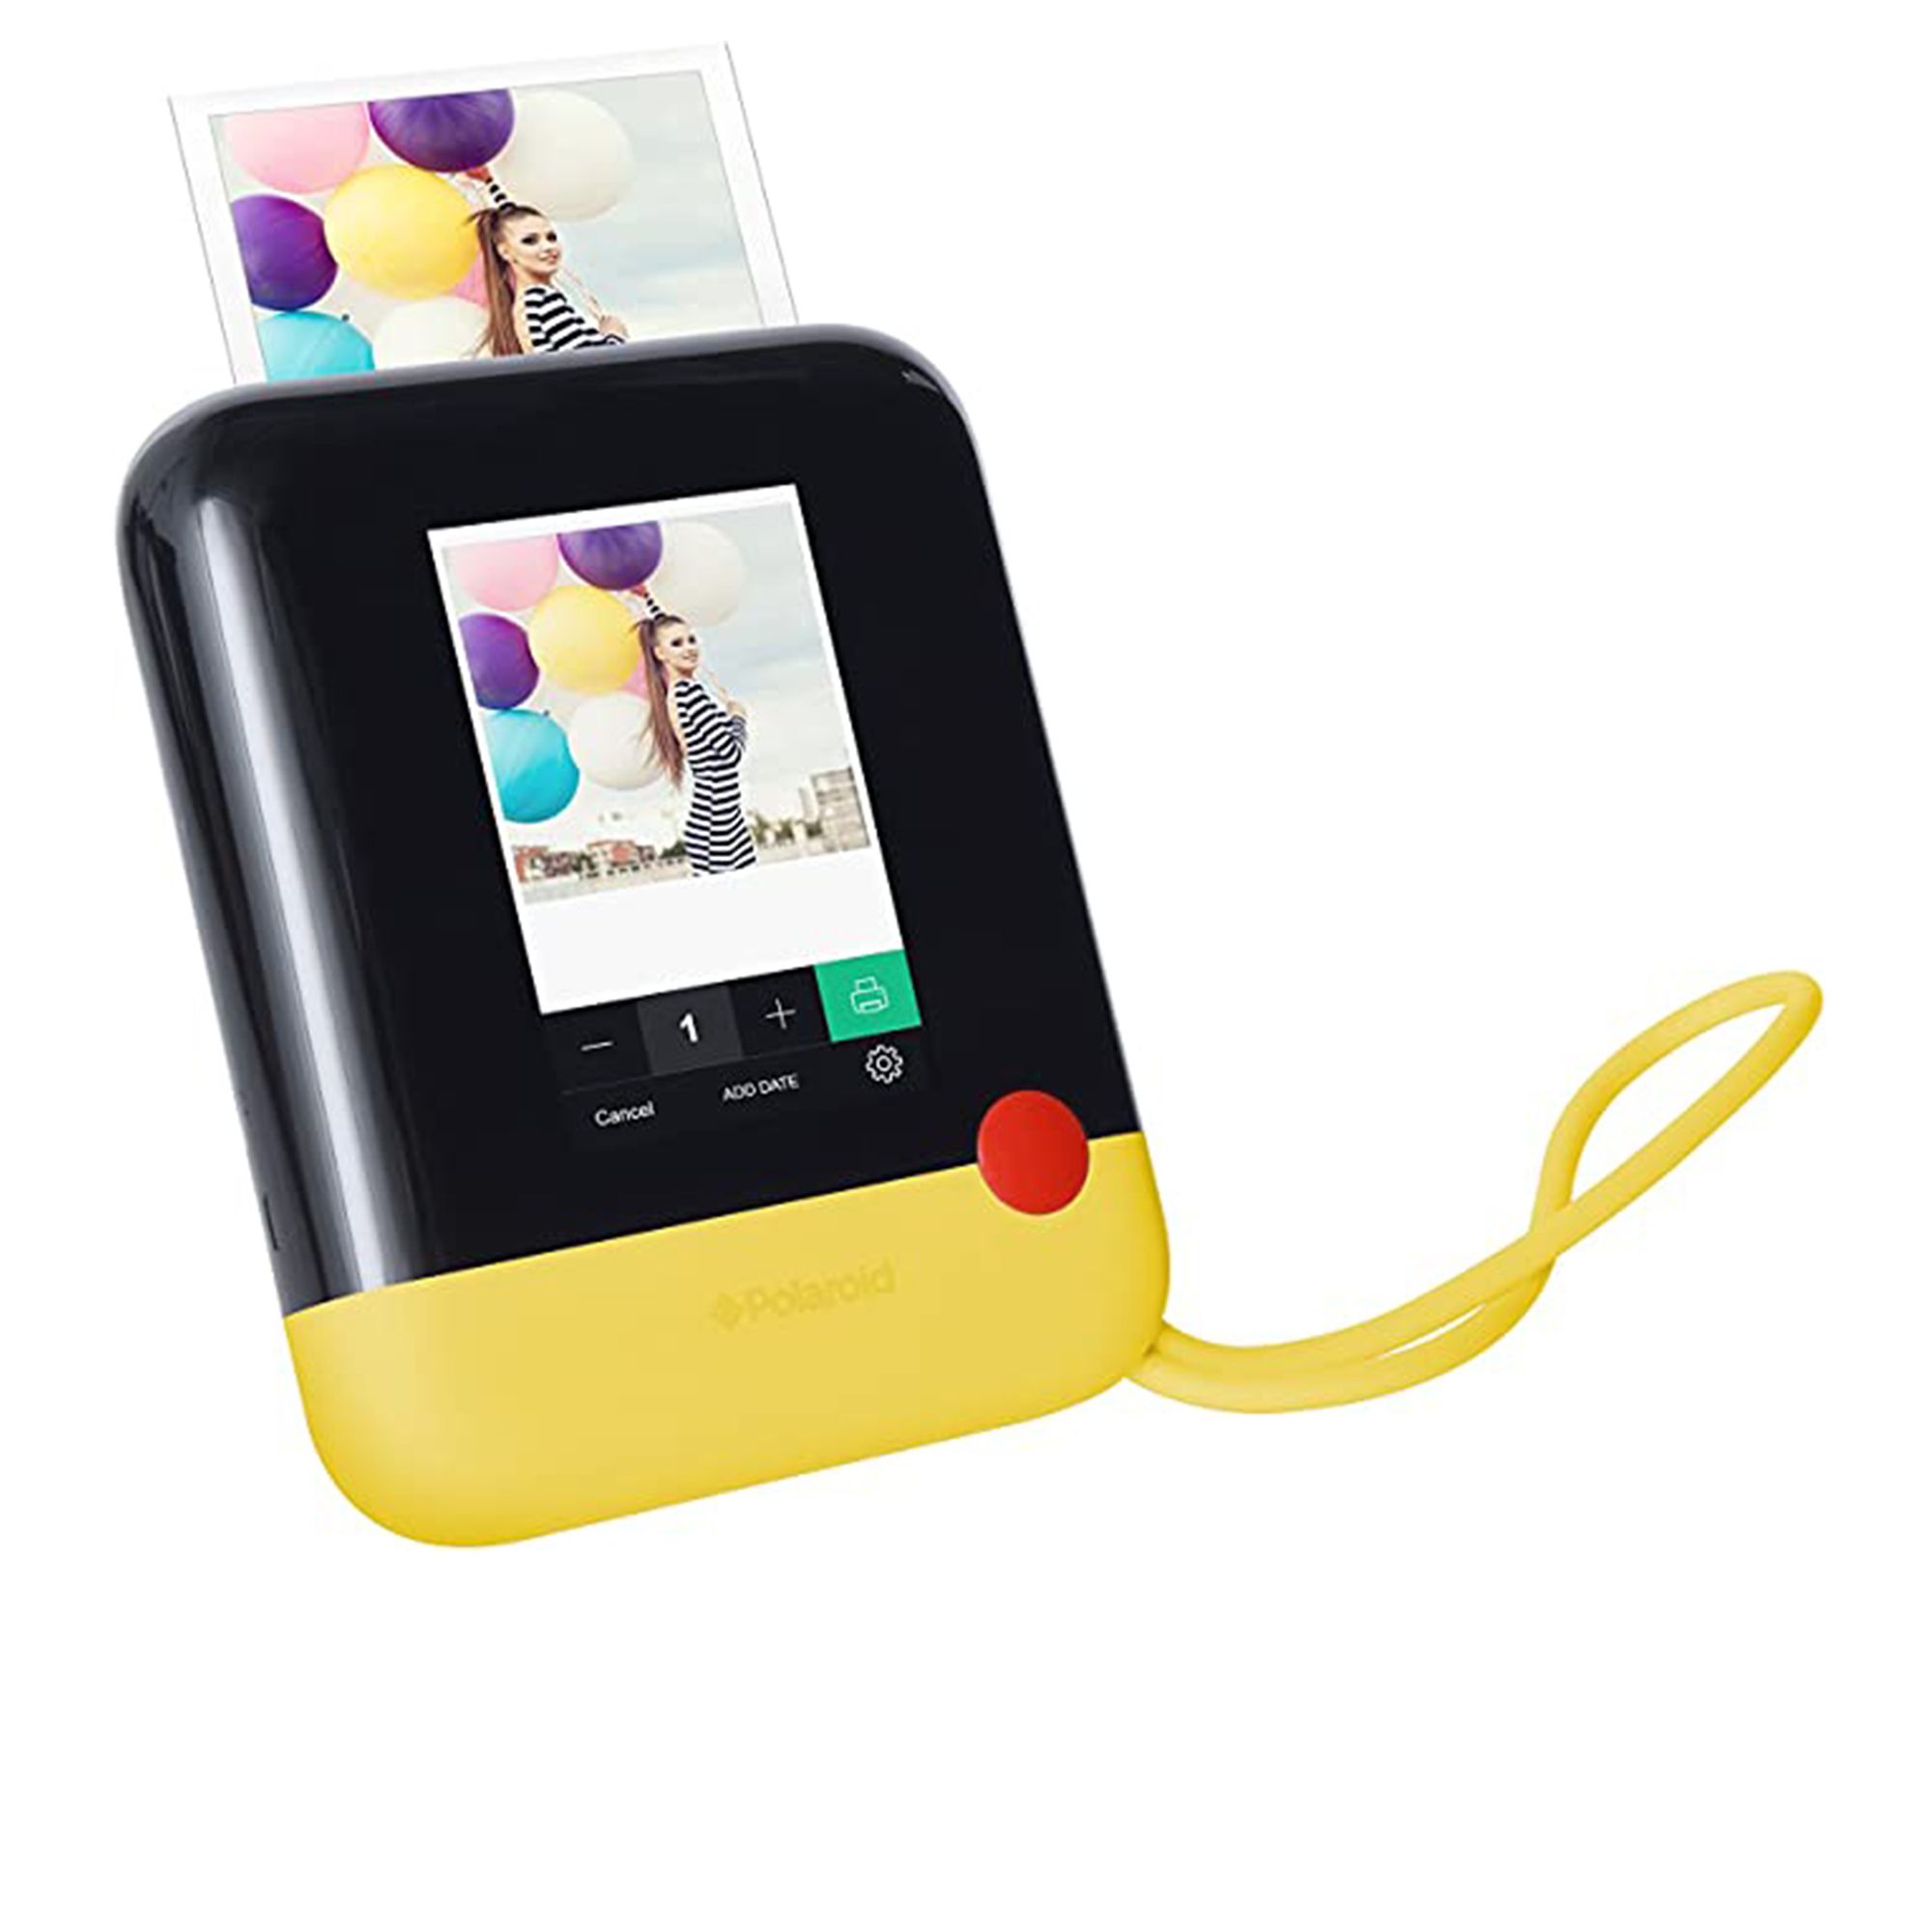 Pop Instant Print fotocamera digitale istantanea colore giallo-nero